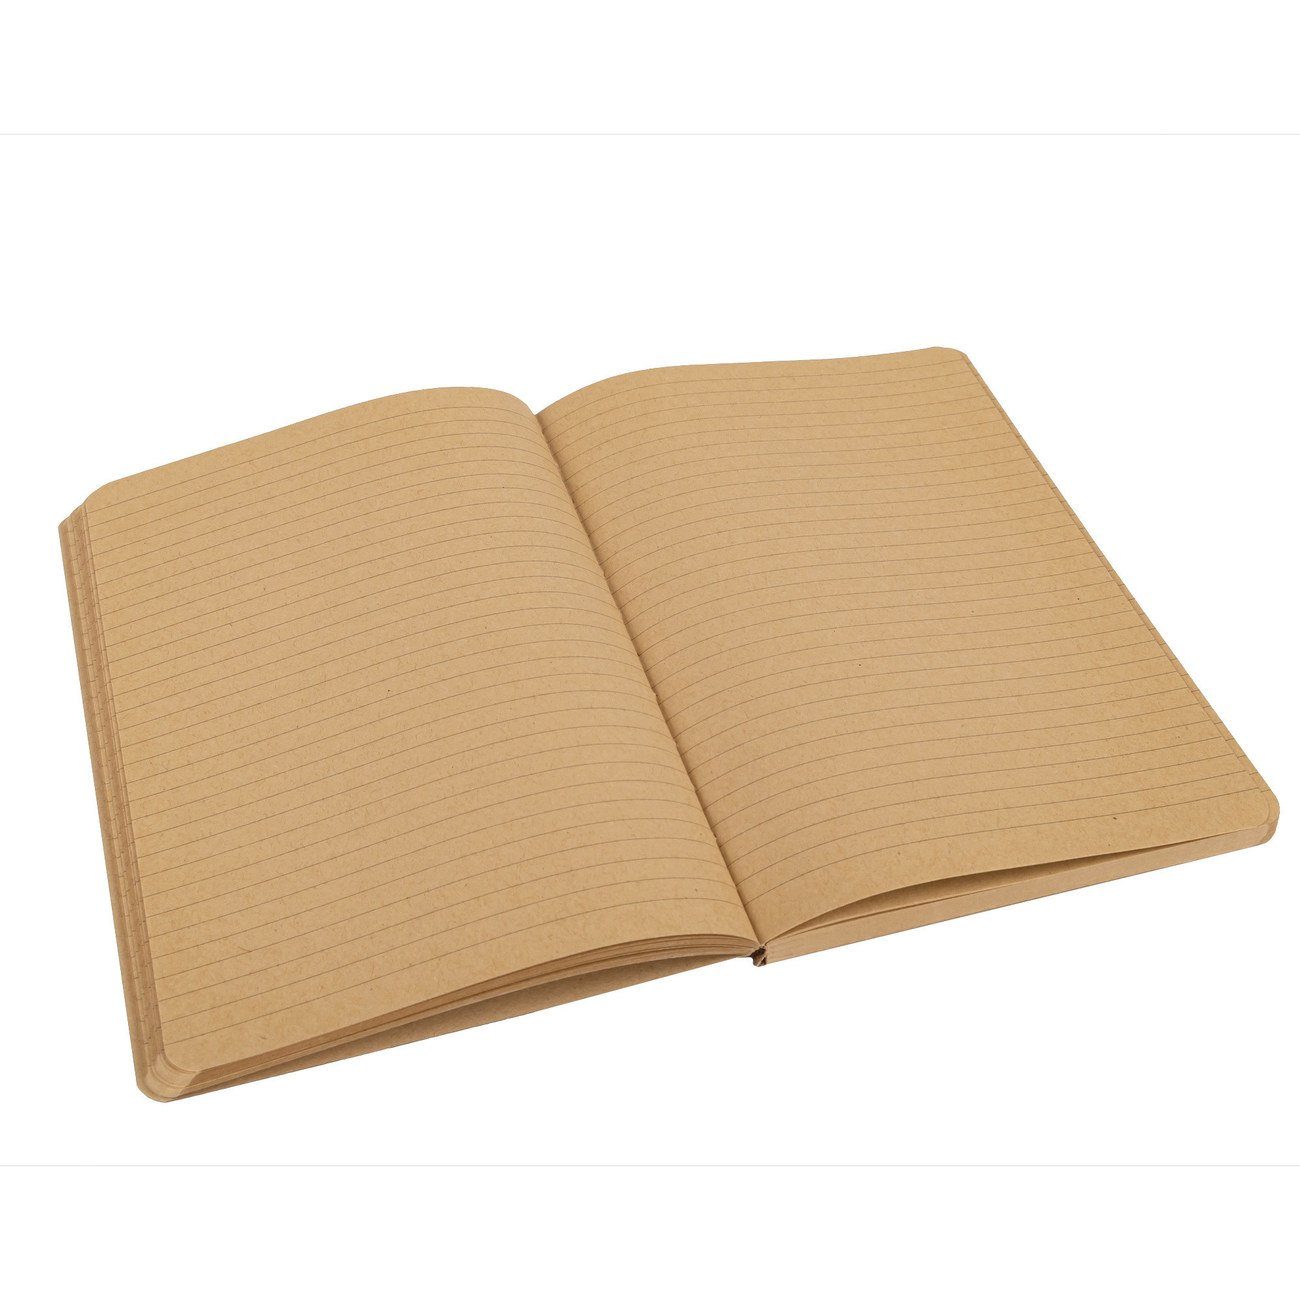 Idena Notizbuch - Seiten liniert - - Notebook 192 Korkeinband - Notizbuch